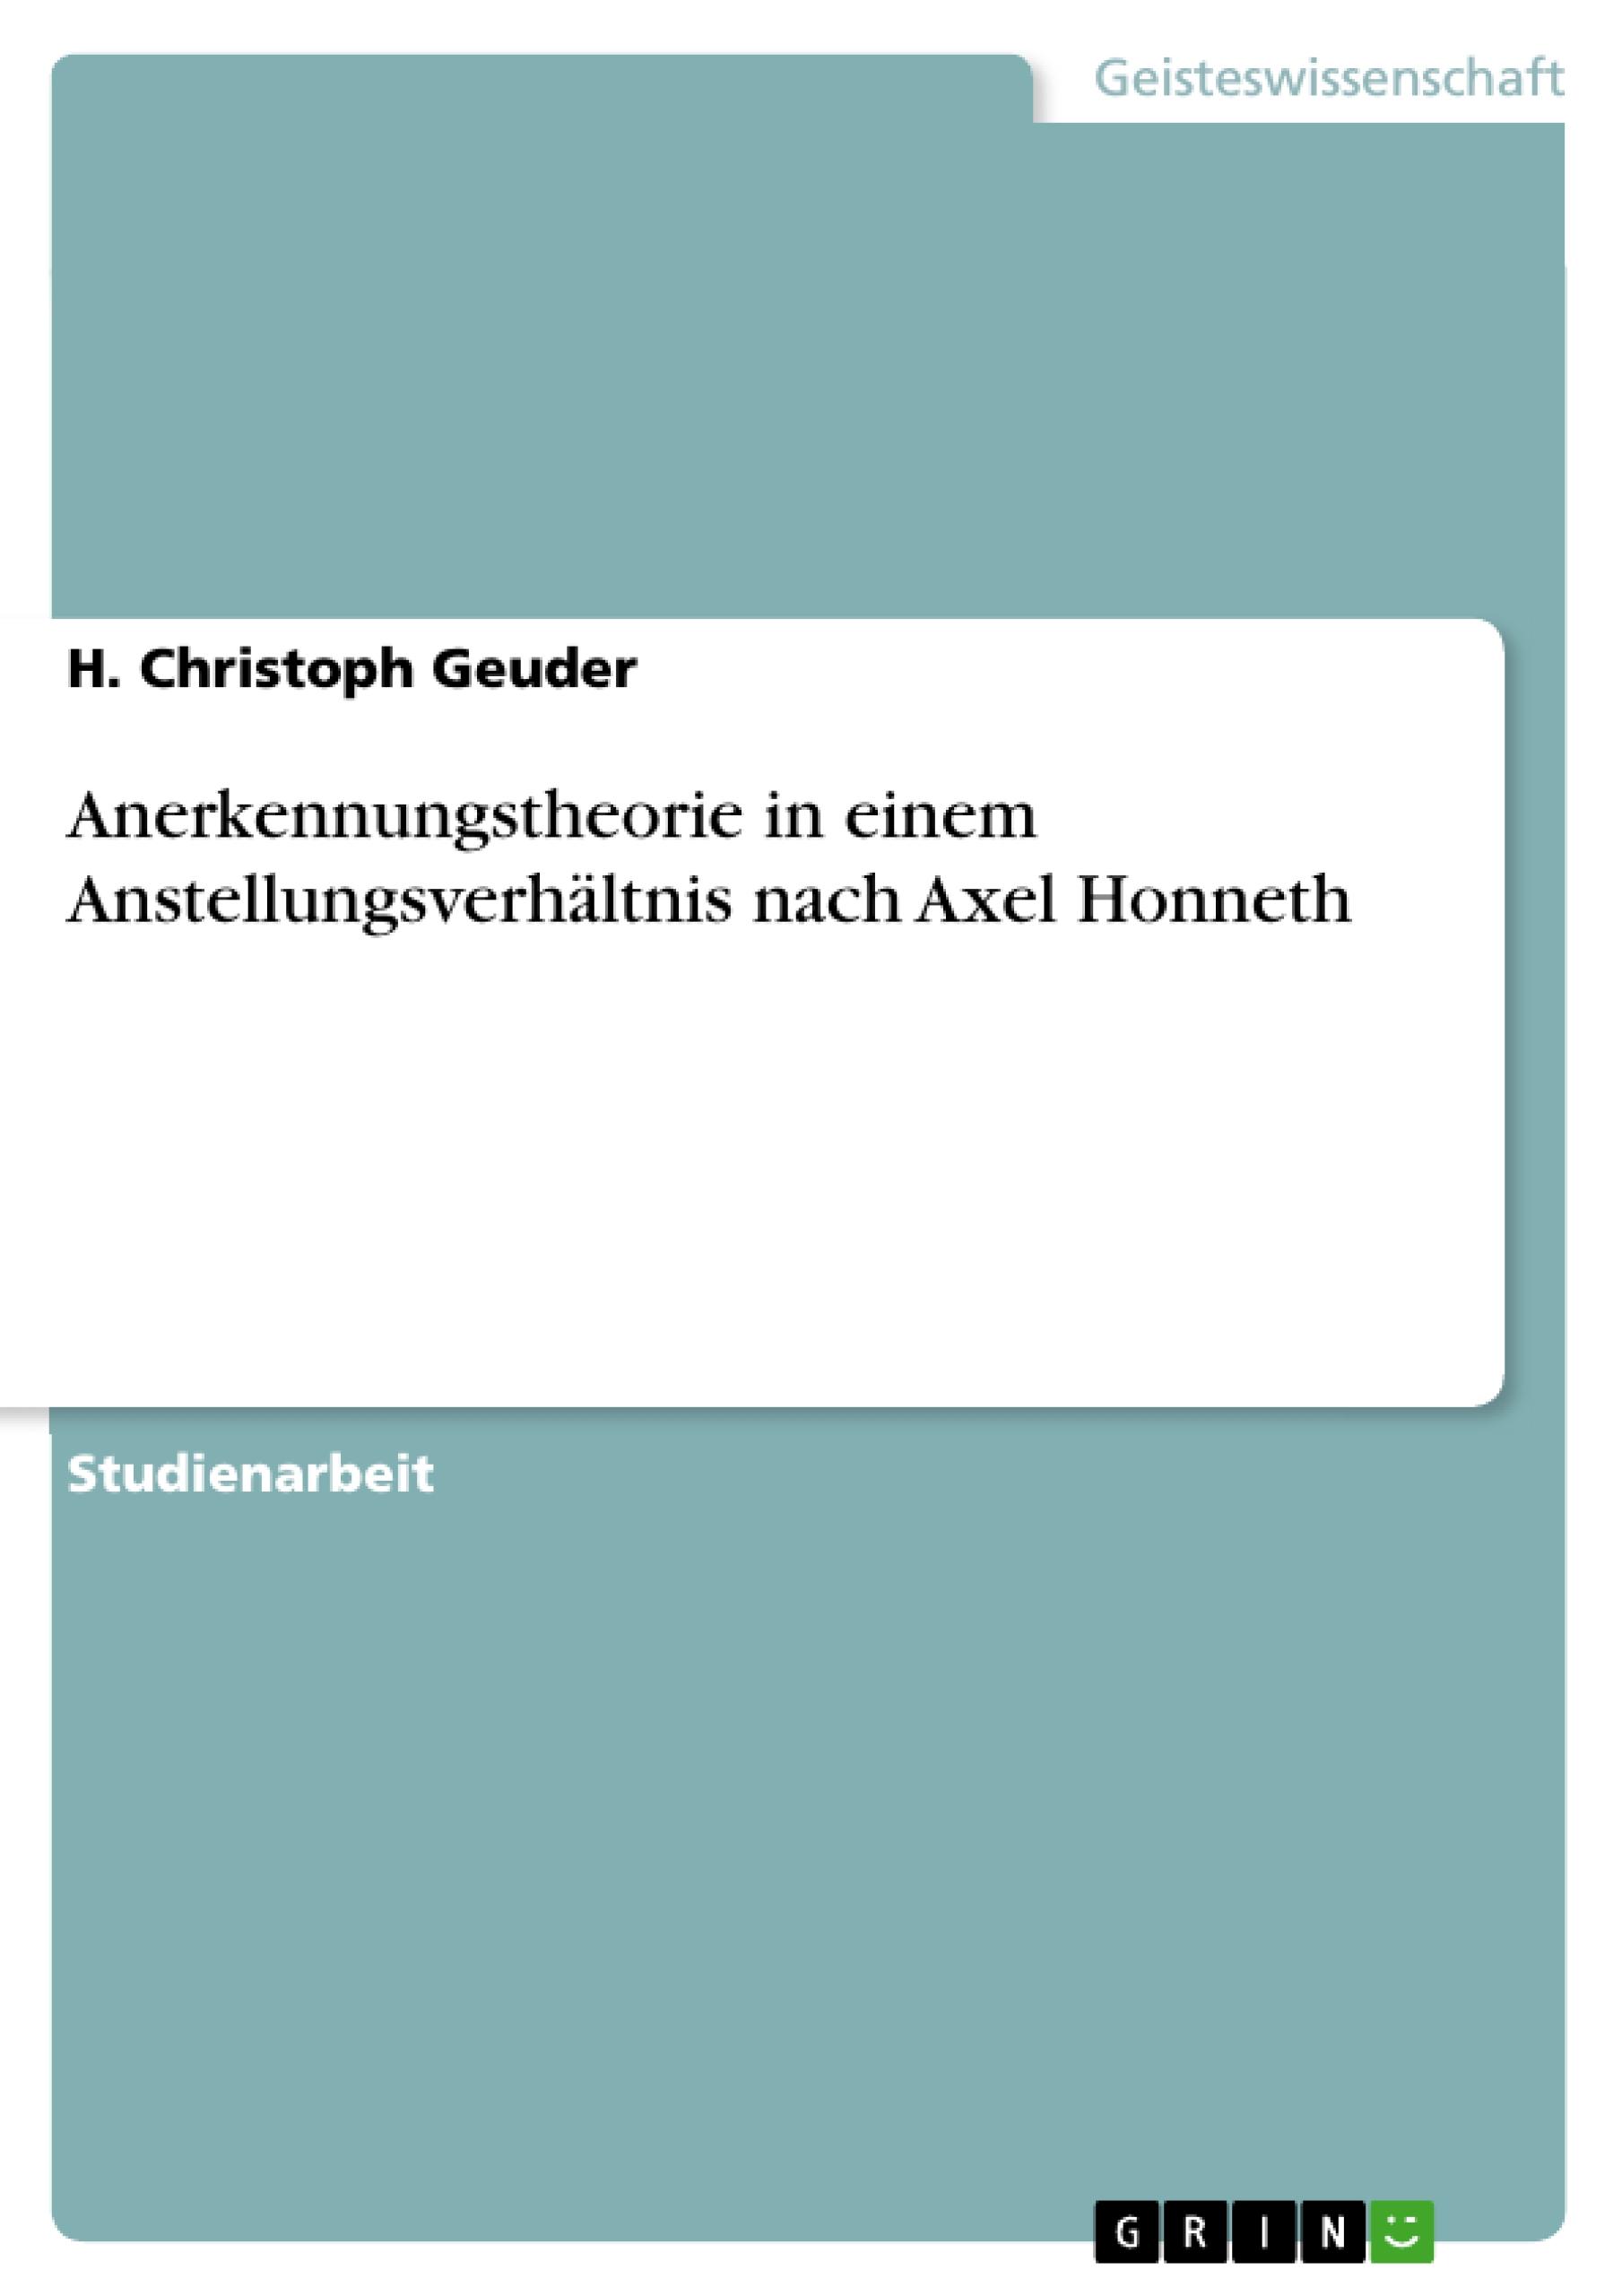 Anerkennungstheorie in einem Anstellungsverhaeltnis nach Axel Honneth - Geuder, H. Christoph